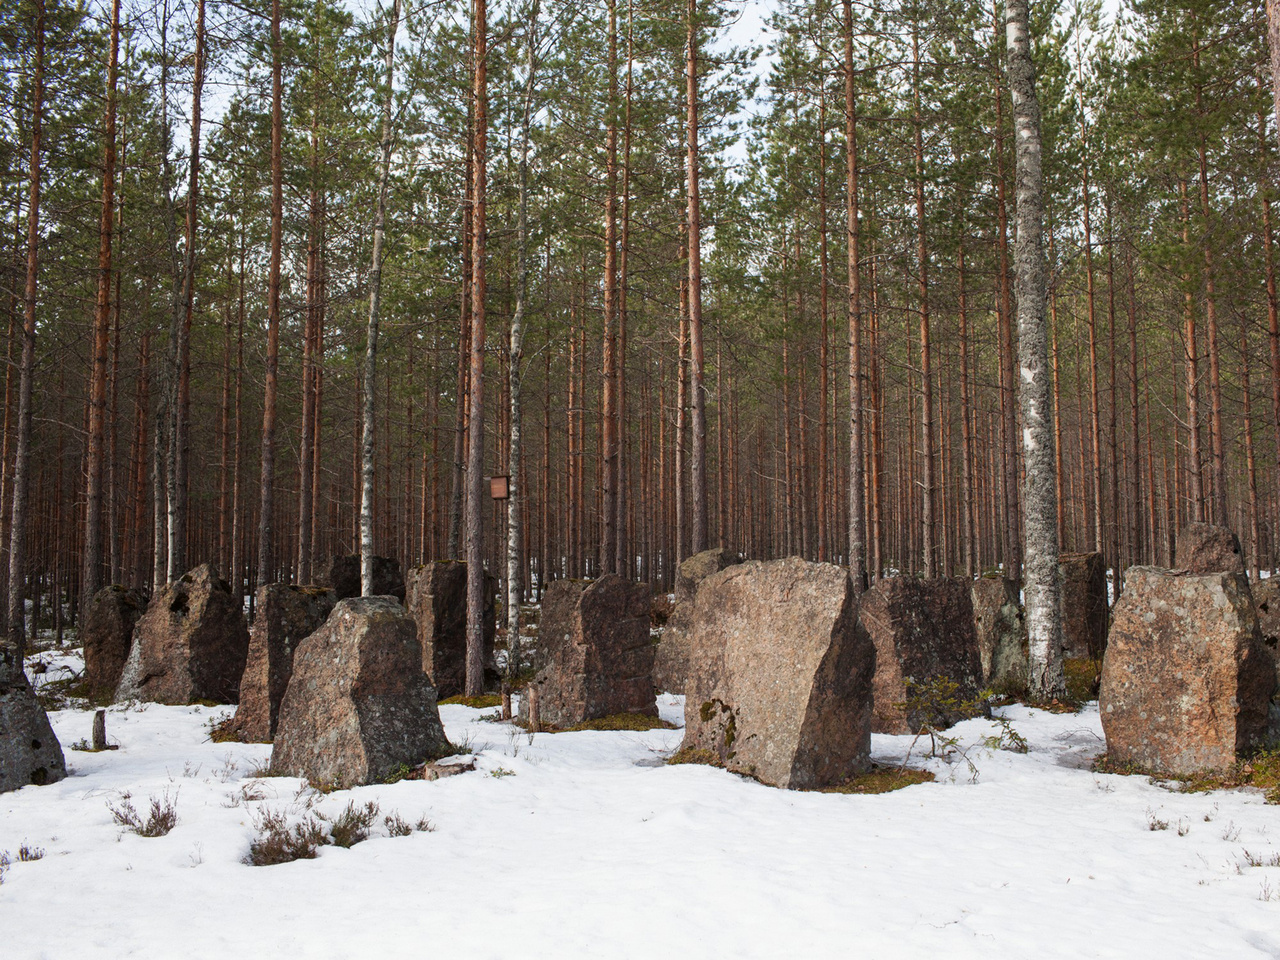 A Salpa-vonal Finnországban, 2017-ben. A fák közé is beékelődő óriási, 3-4 tonnás kőtömböket 1940-41-ben, a II. világháború alatt állította fel egy 225 km hosszan elnyújtott védelmi vonalnak Finnország. A 350 ezer kőből álló Salpa-vonal célja az volt, hogy megvédje a határt a szovjet harckocsik esetleges inváziójától. A létrehozásához 70 ezer katona munkájára volt szükség.